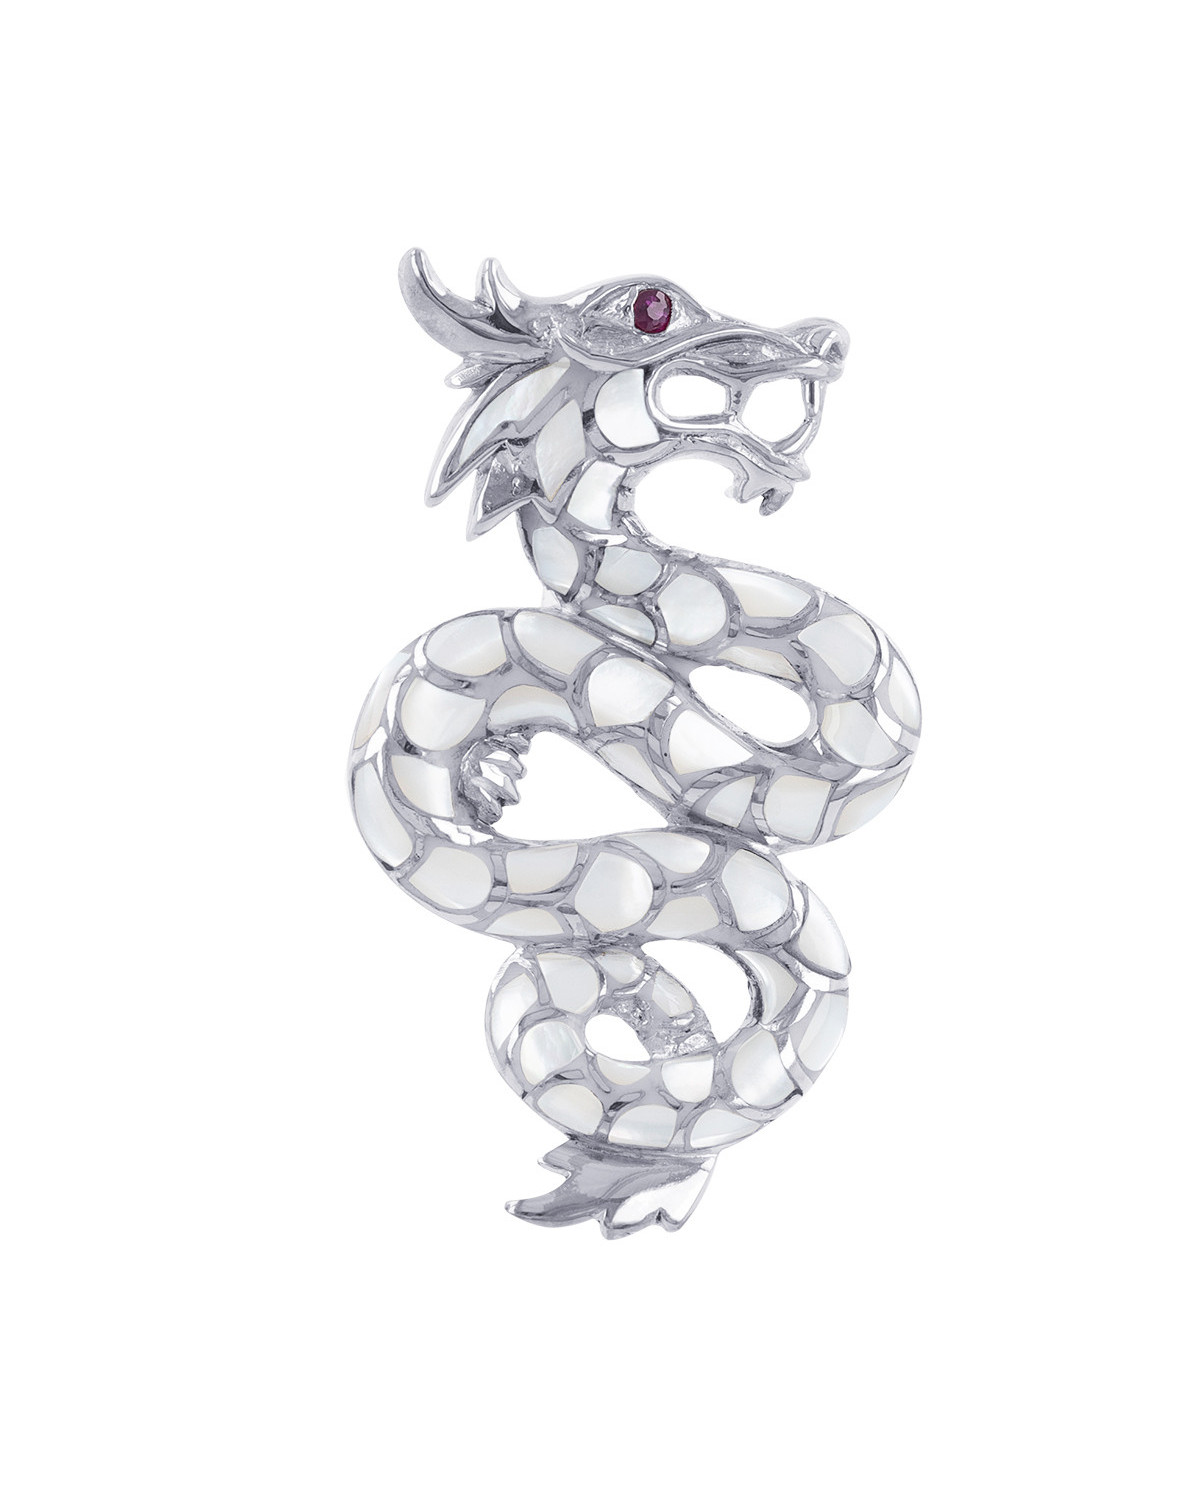 Pendentif dragon argent massif nacre blanche Zirconium rouge chaîne serpent incluse